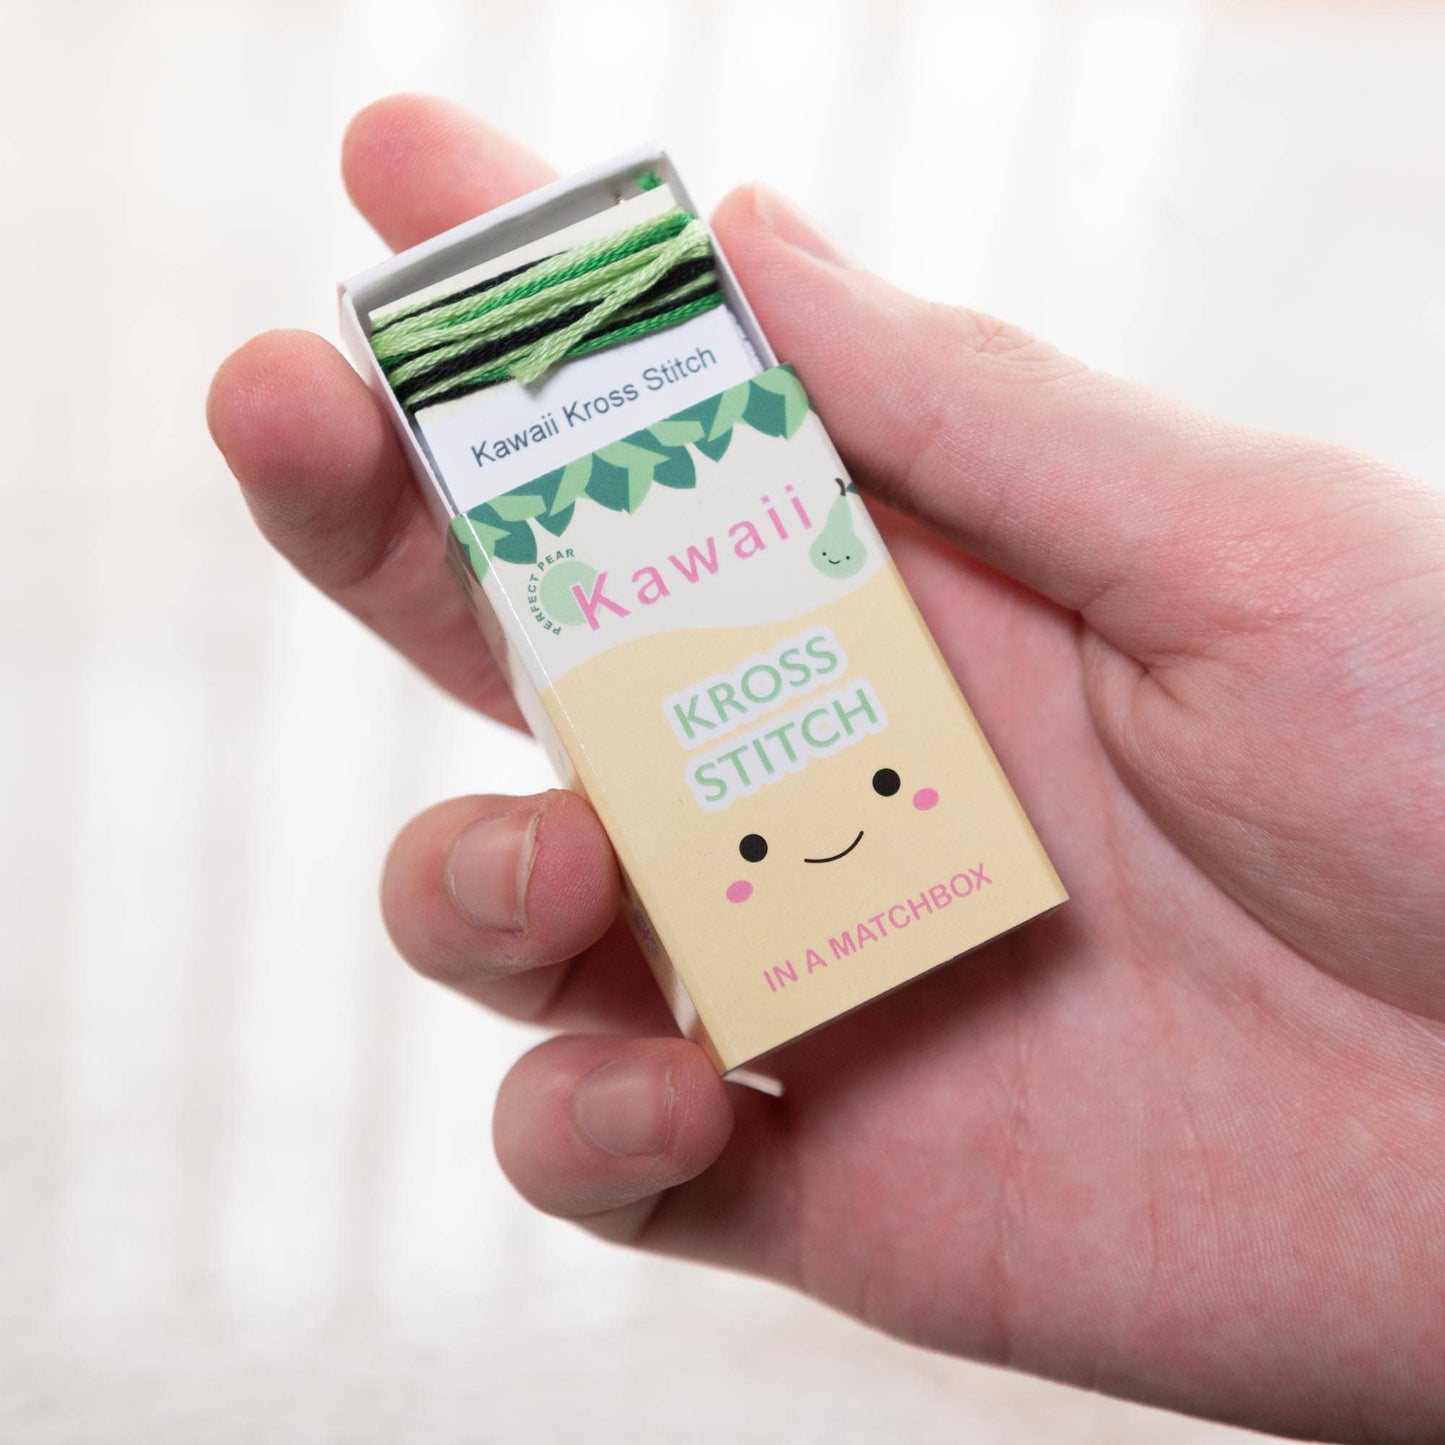 Kawaii Pear Mini Cross Stitch Kit In A Matchbox